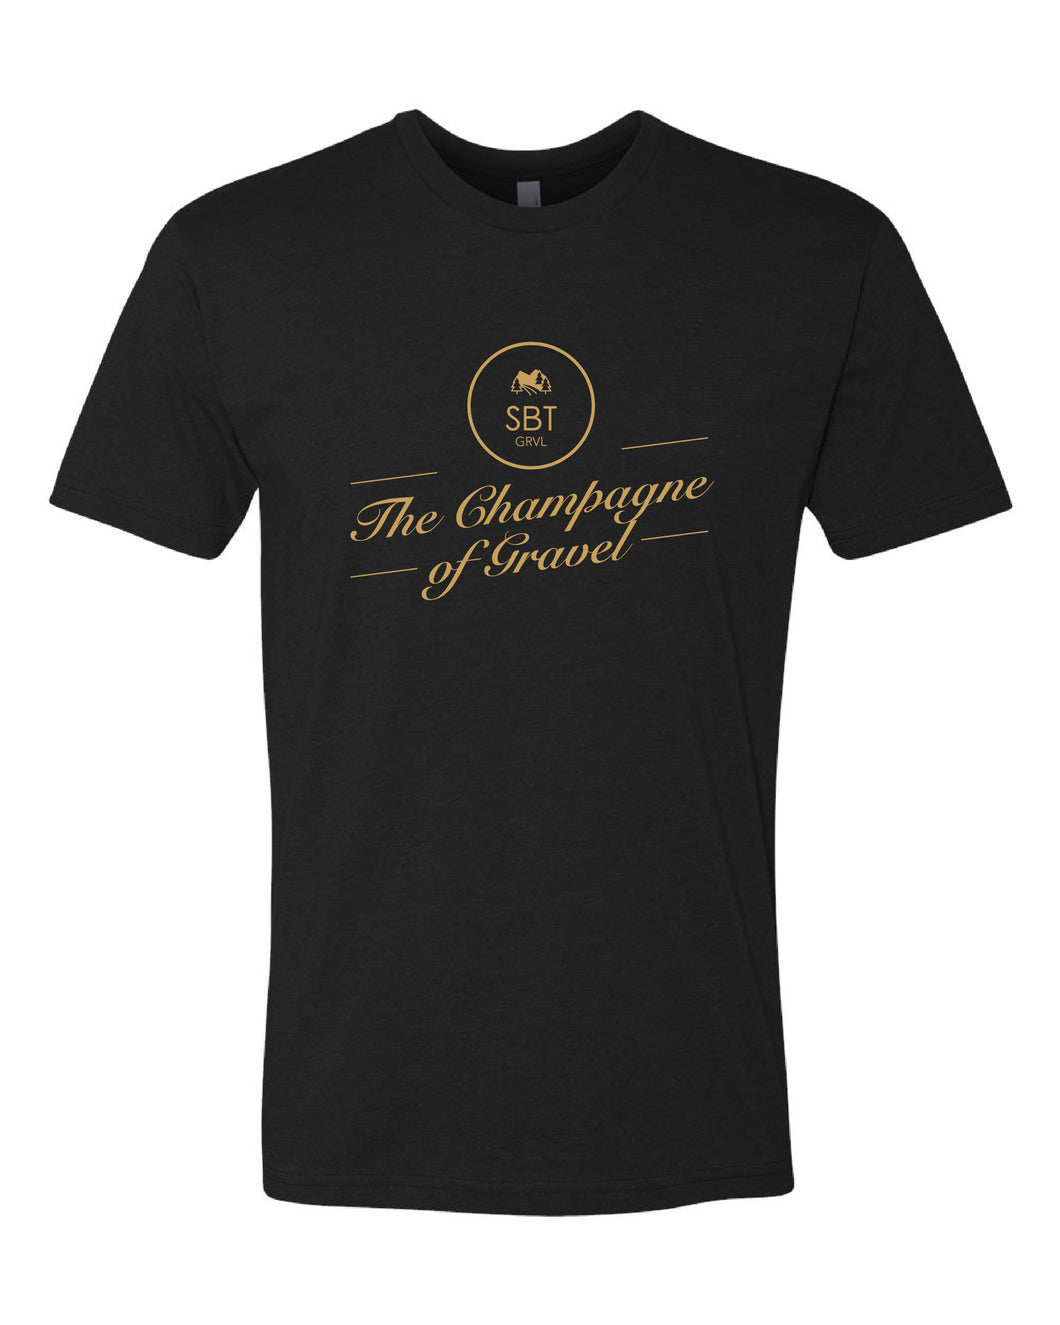 Champagne of Gravel Men's t-shirt